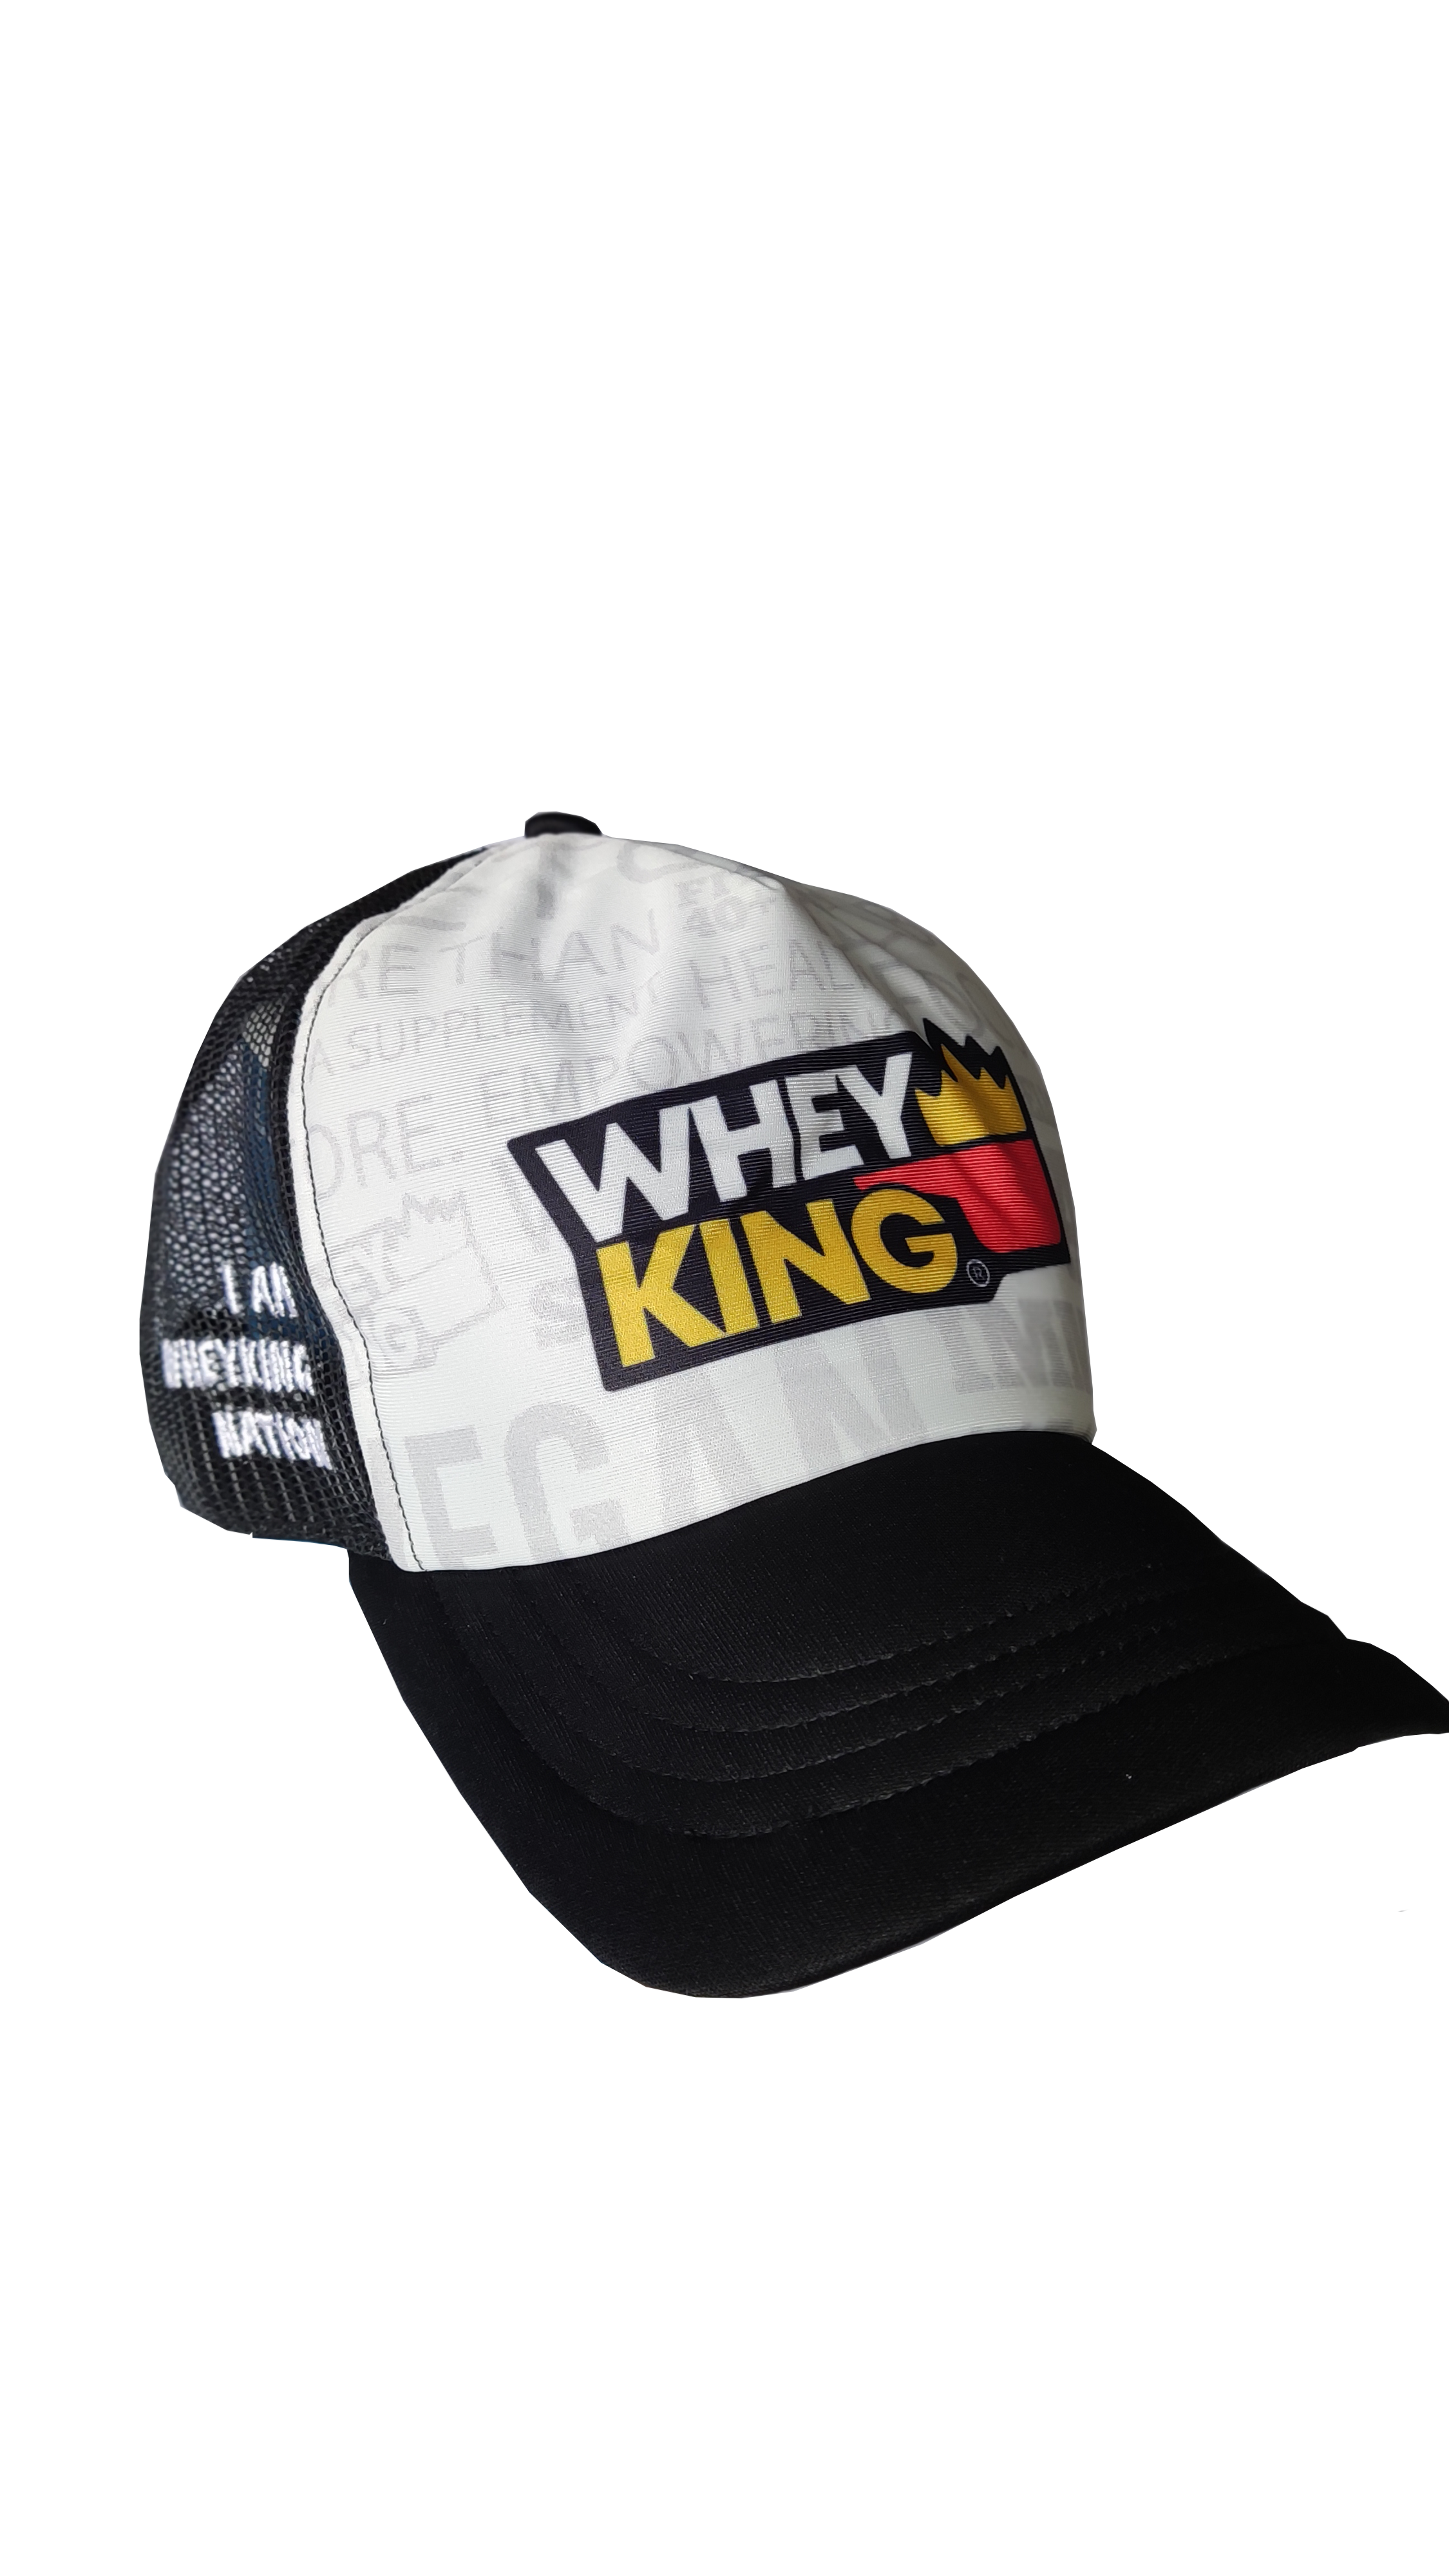 WHEY KING SNAPBACK CAP